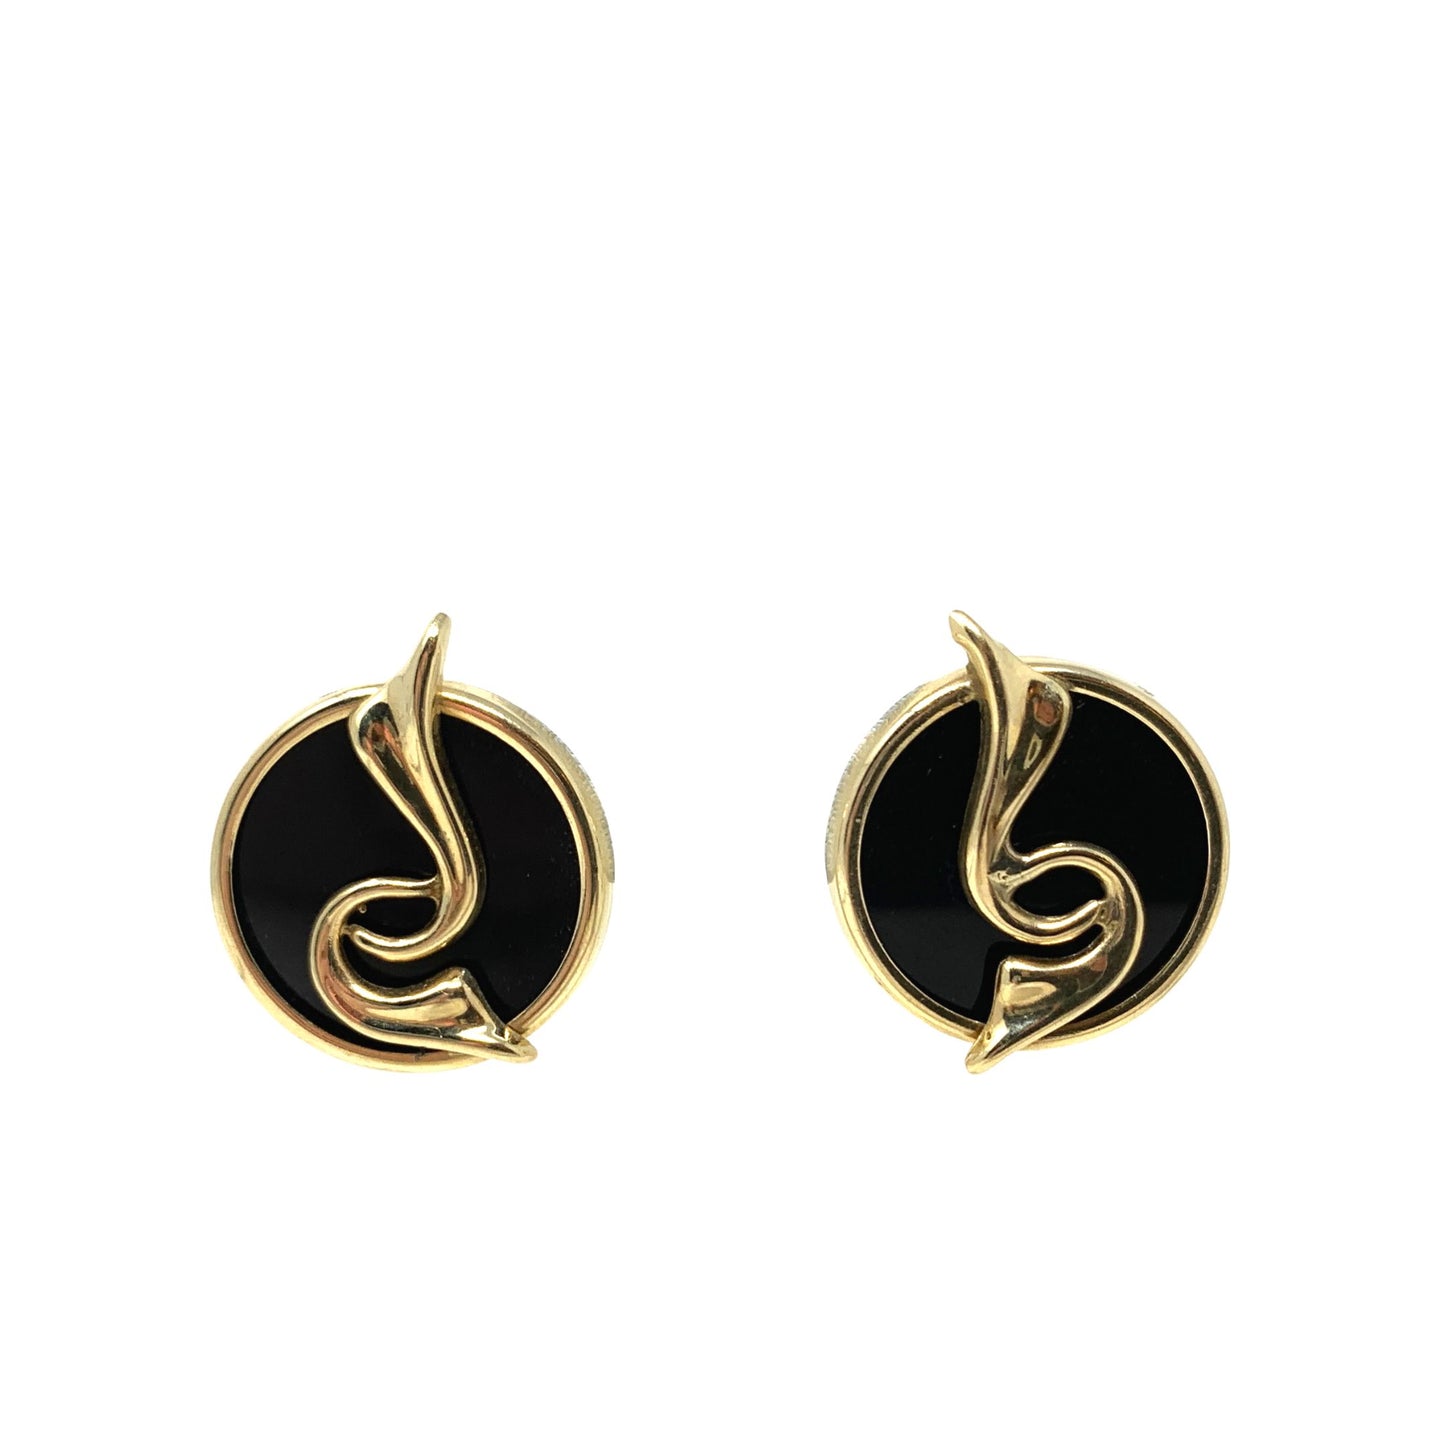 14K Gold Black Onyx Button Earrings